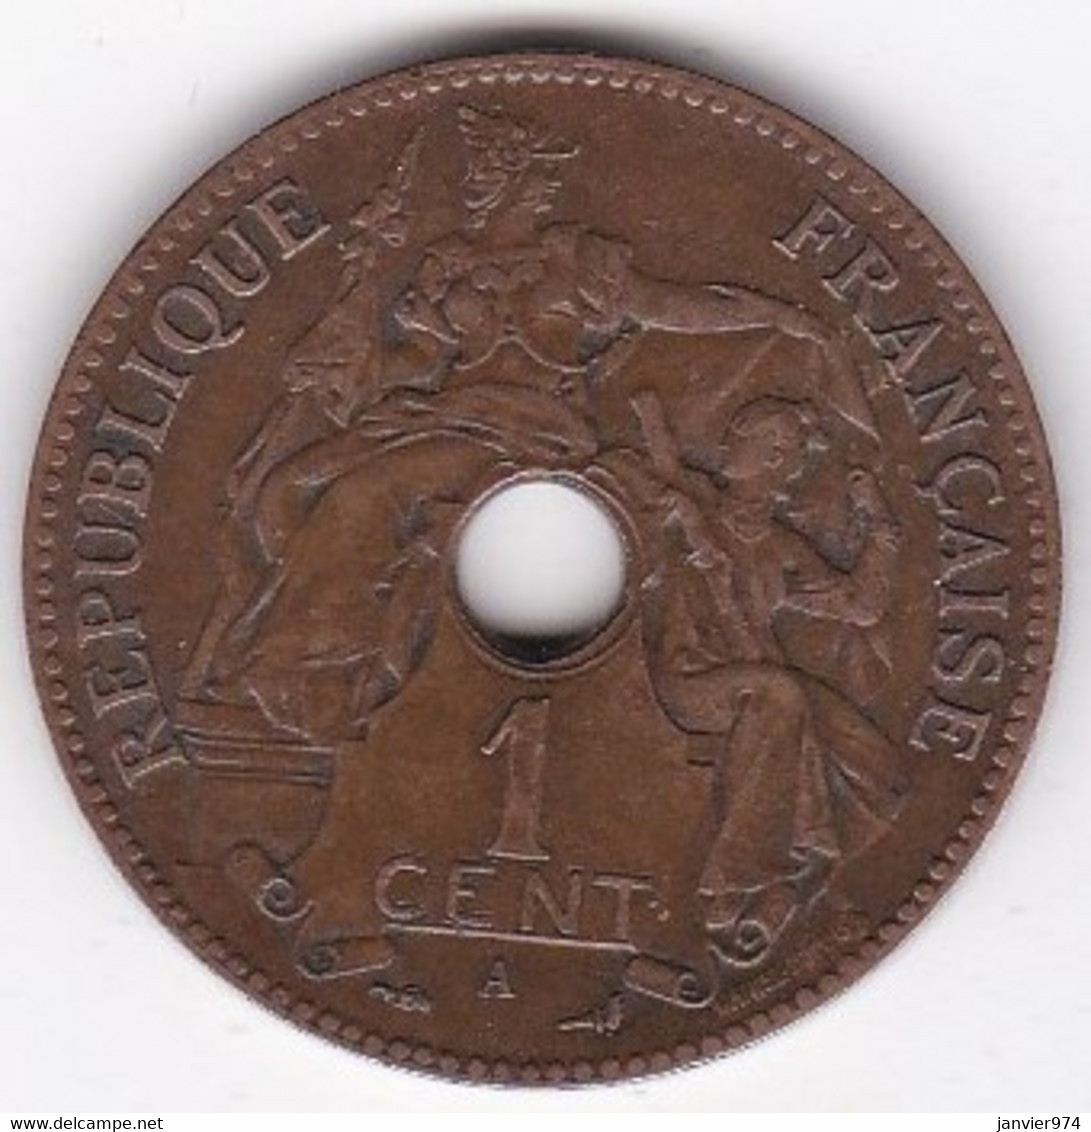 Indochine Française. 1 Cent 1903 A. Bronze, Sup /XF - Französisch-Indochina